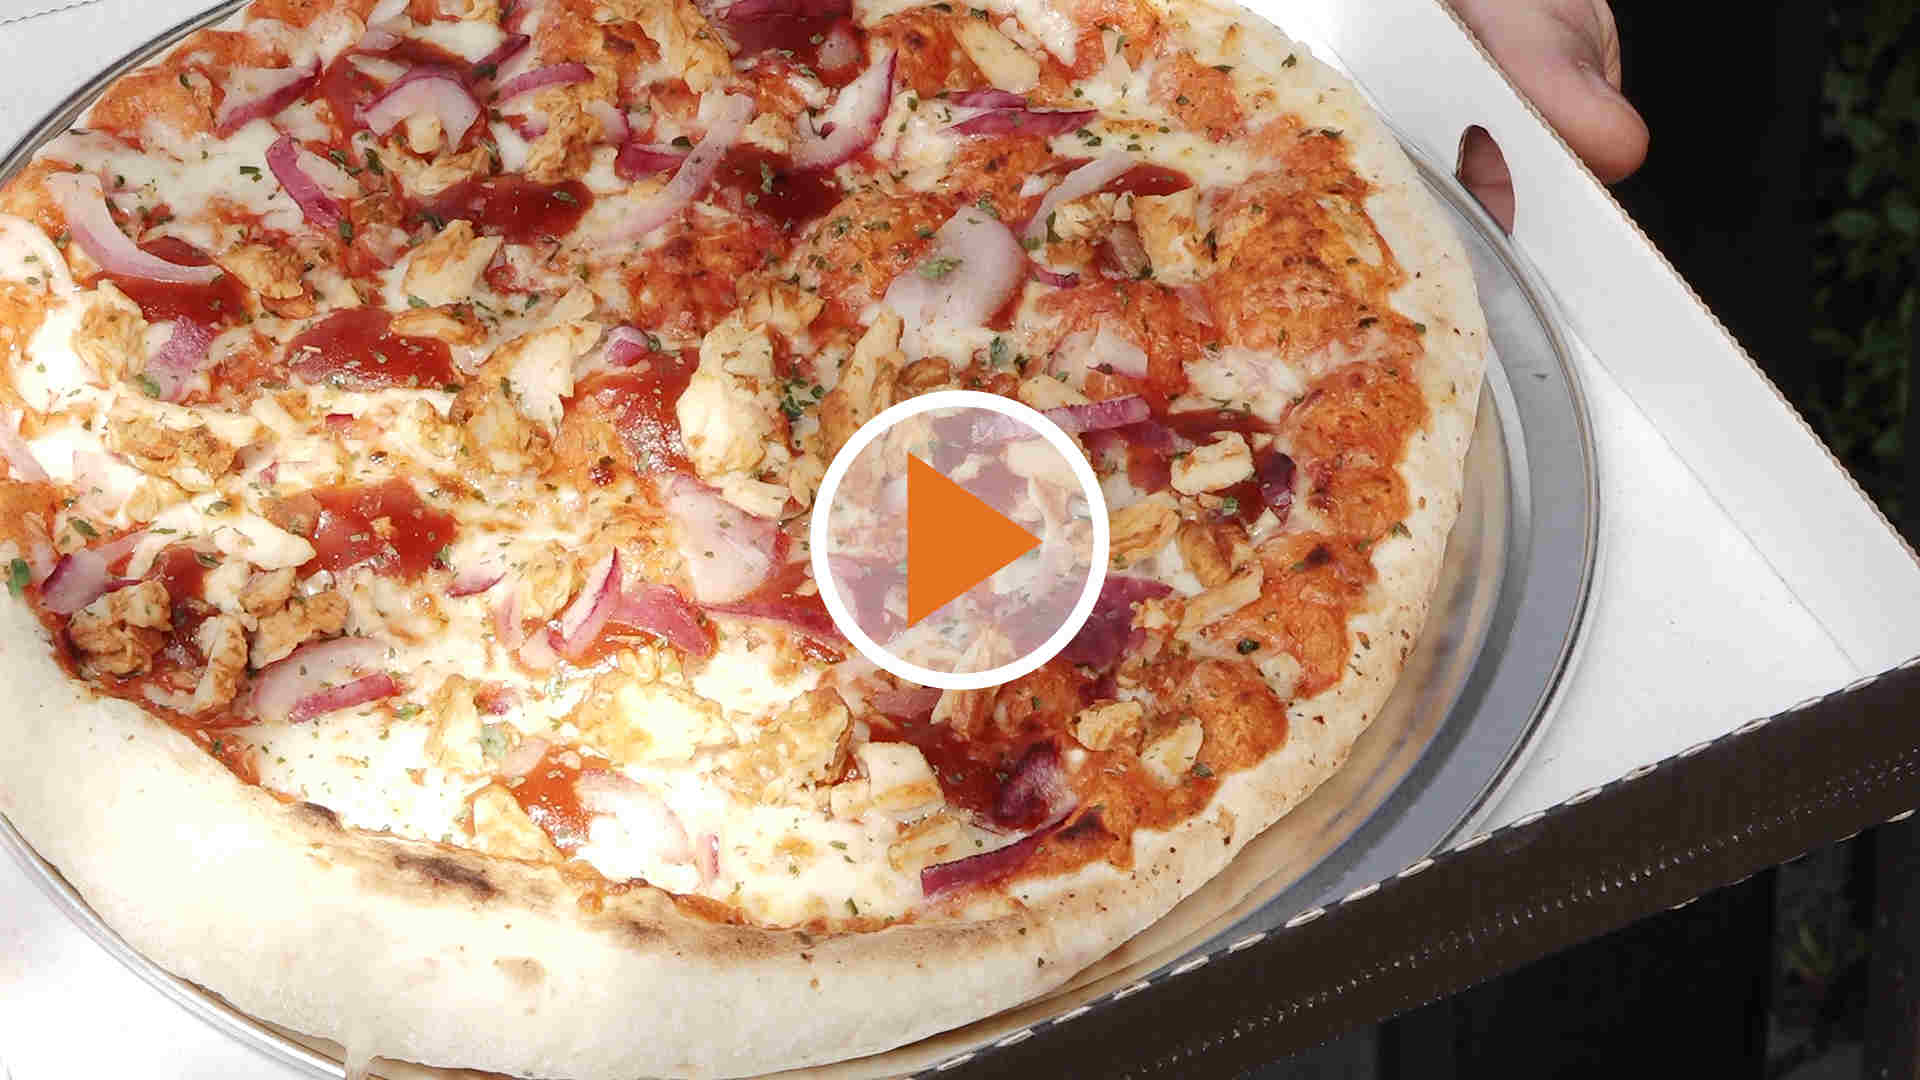 230517_Screen_Ofenfrische-Pizza-aus-dem-Automaten